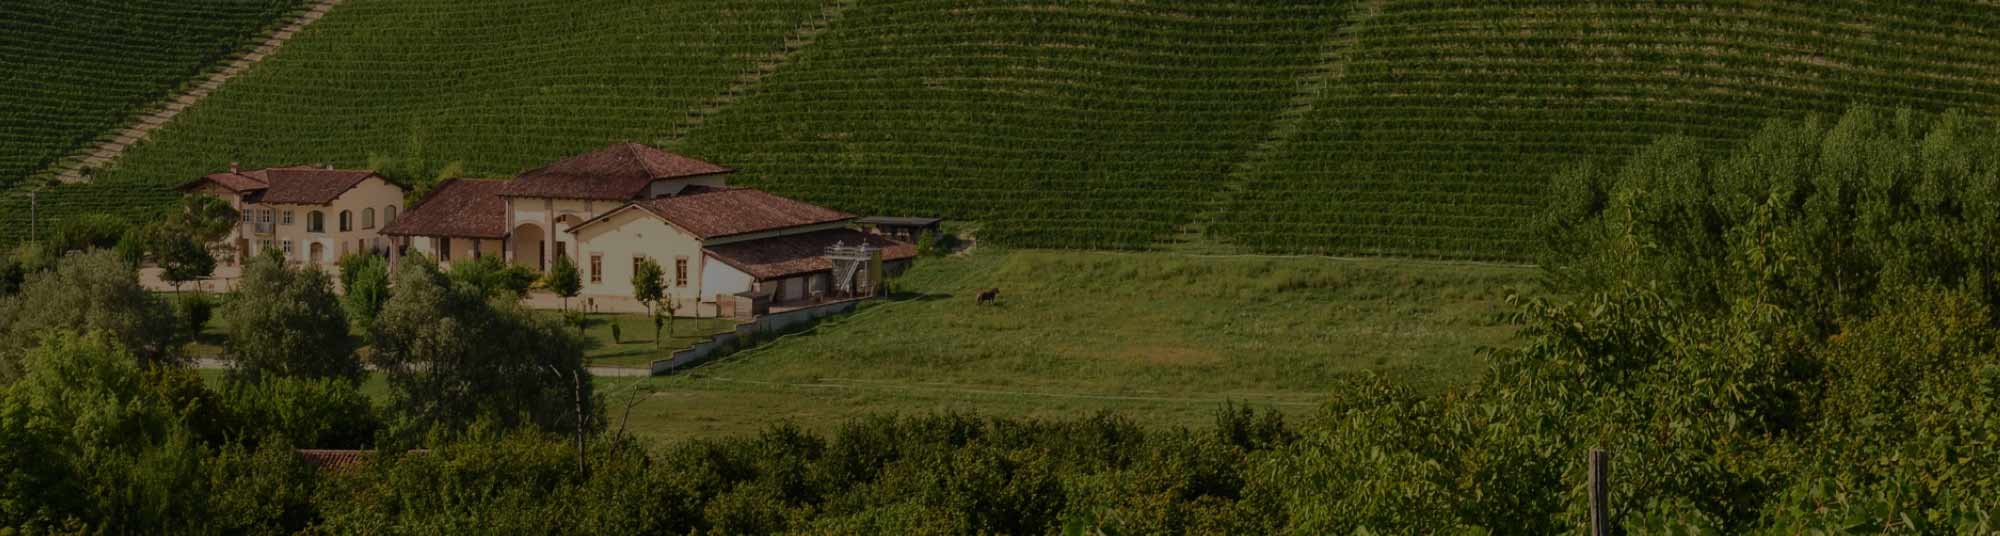 義大利葡萄酒 犀牛酒莊 La Spinetta 熱銷 推薦